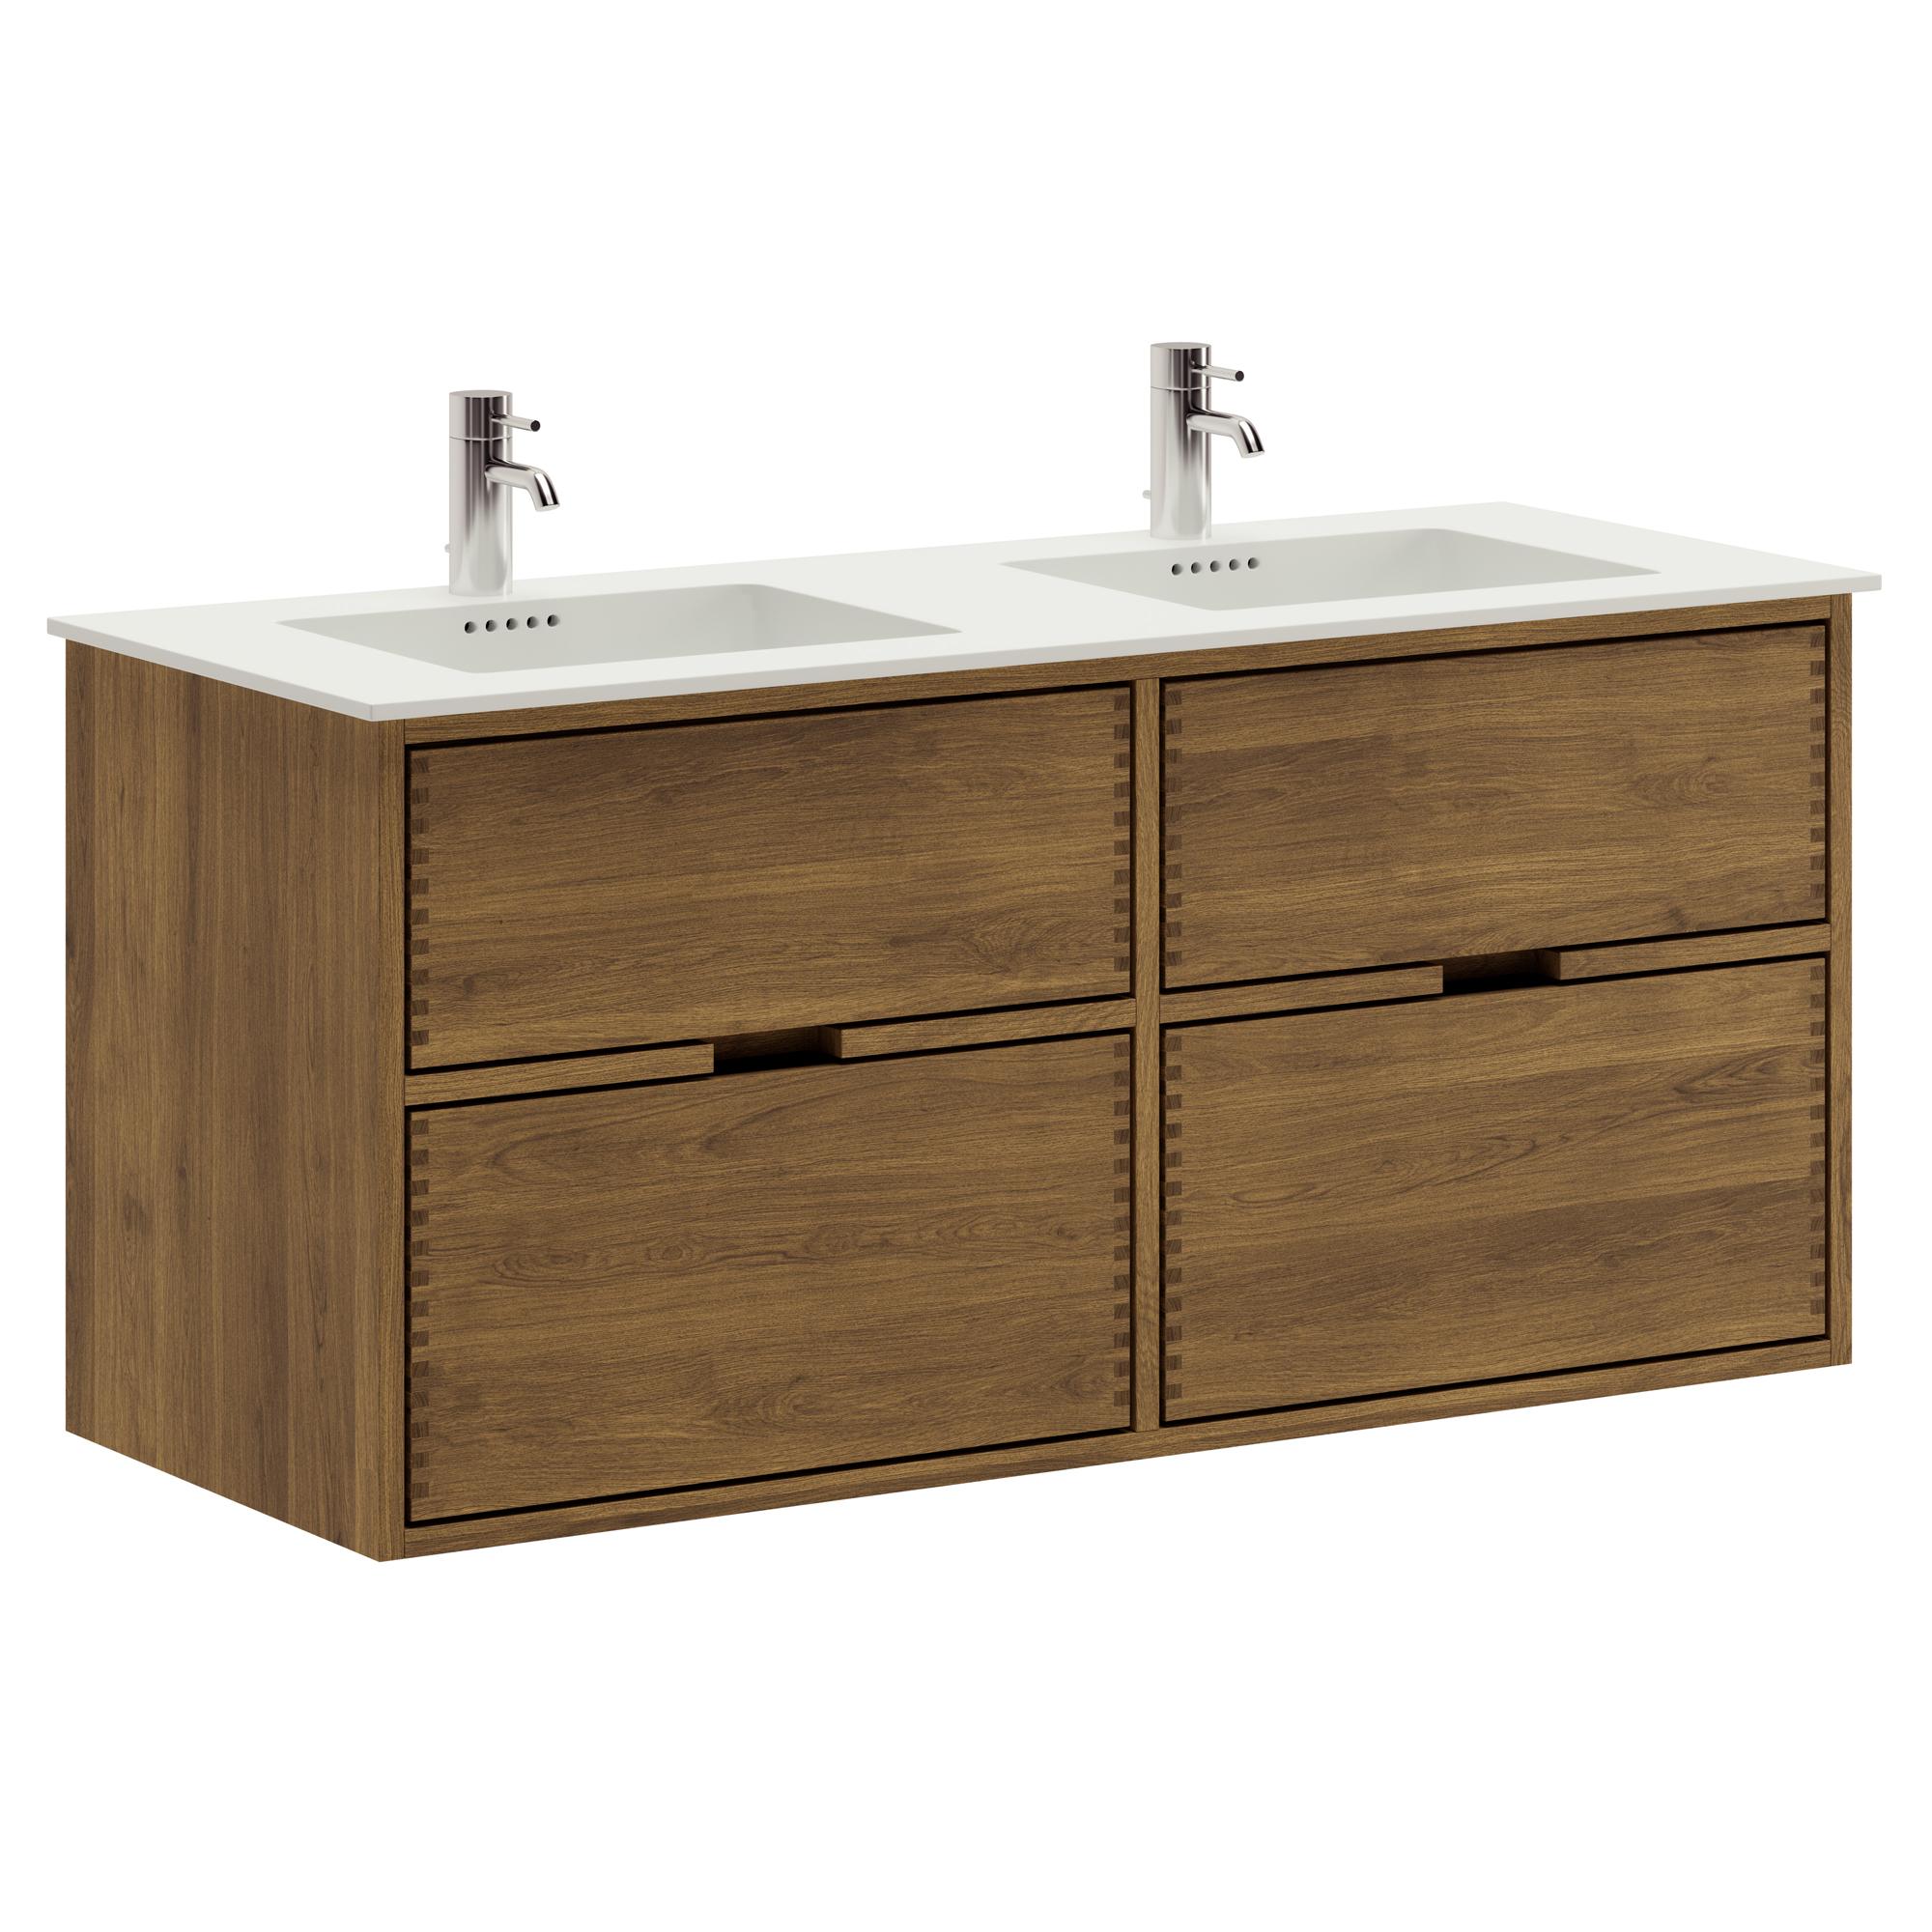 120 cm dunkel-geölter Just Wood Badezimmermöbel mit 4 Schubladen und Solid Surface-Waschbecken - Doppelwaschbecken